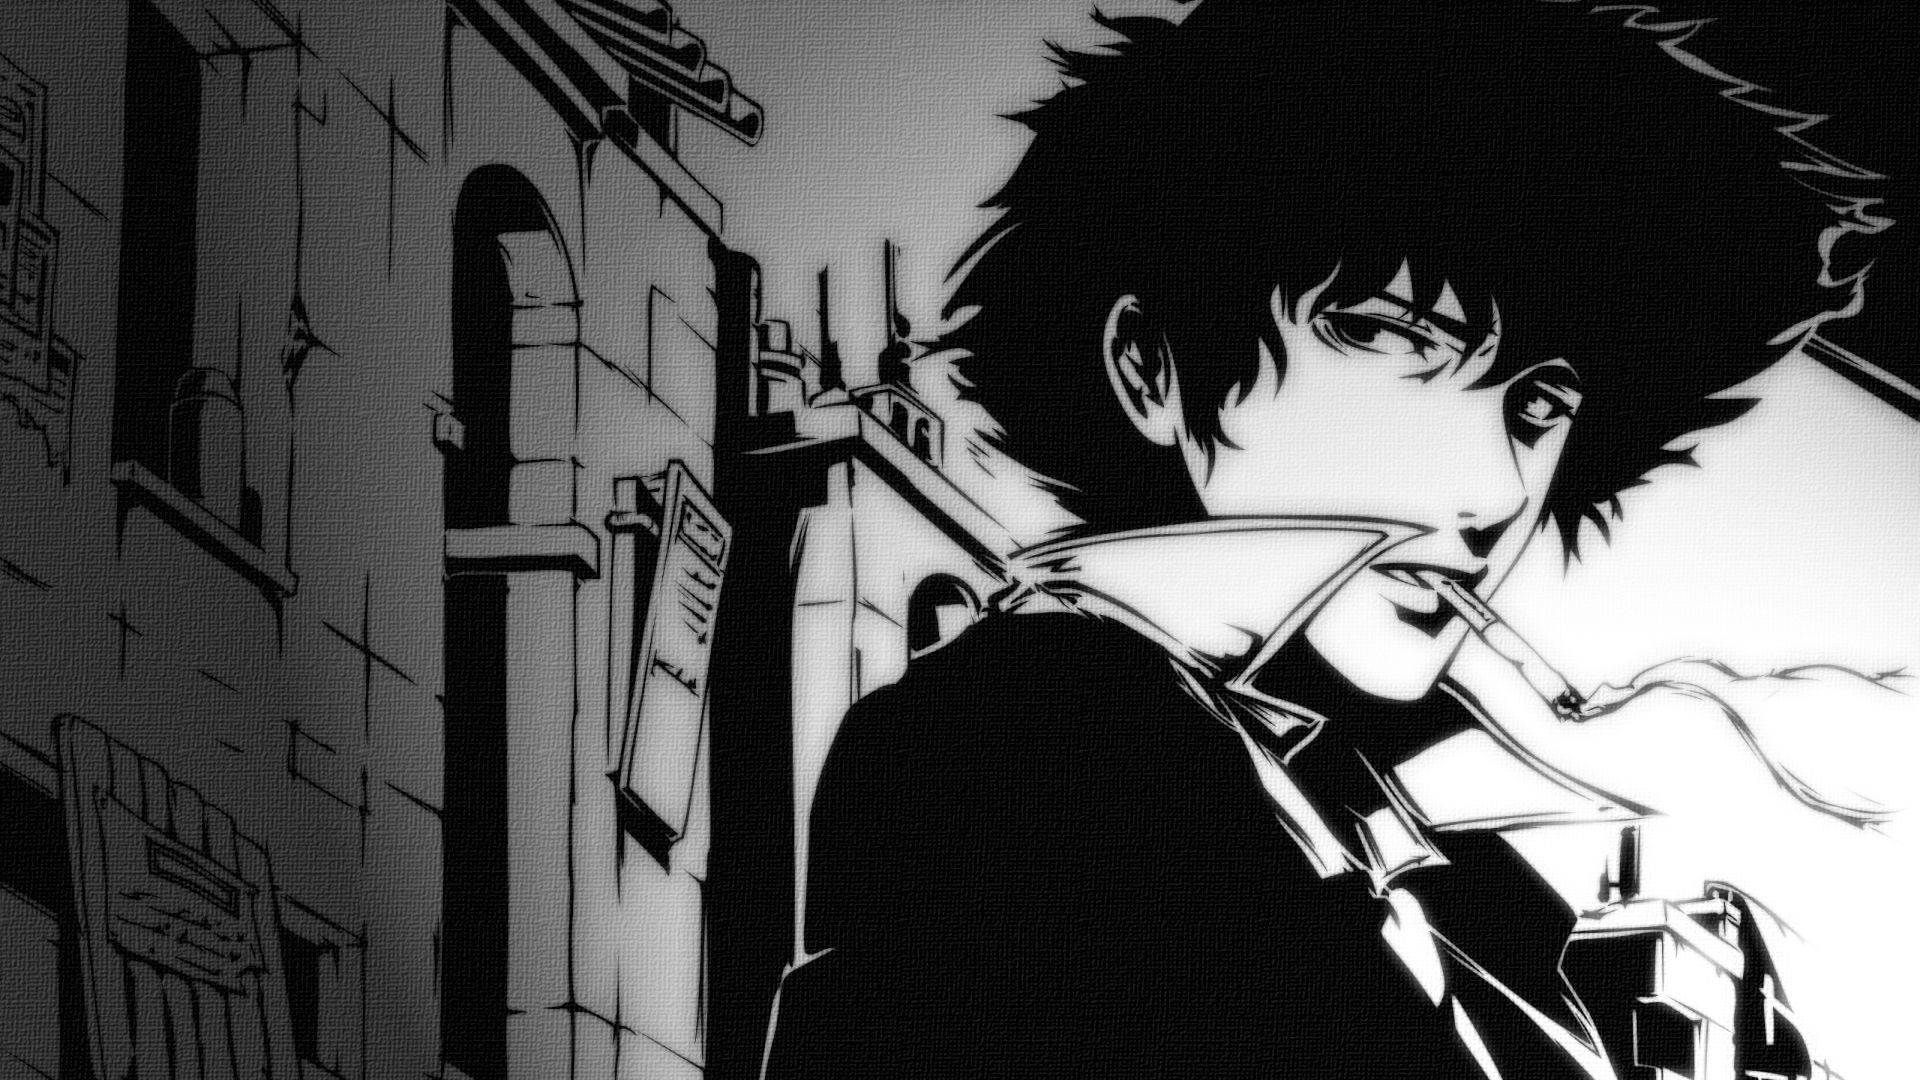 Anime aesthetic wallpaper | Aesthetic anime, Dark wallpaper, Anime wallpaper